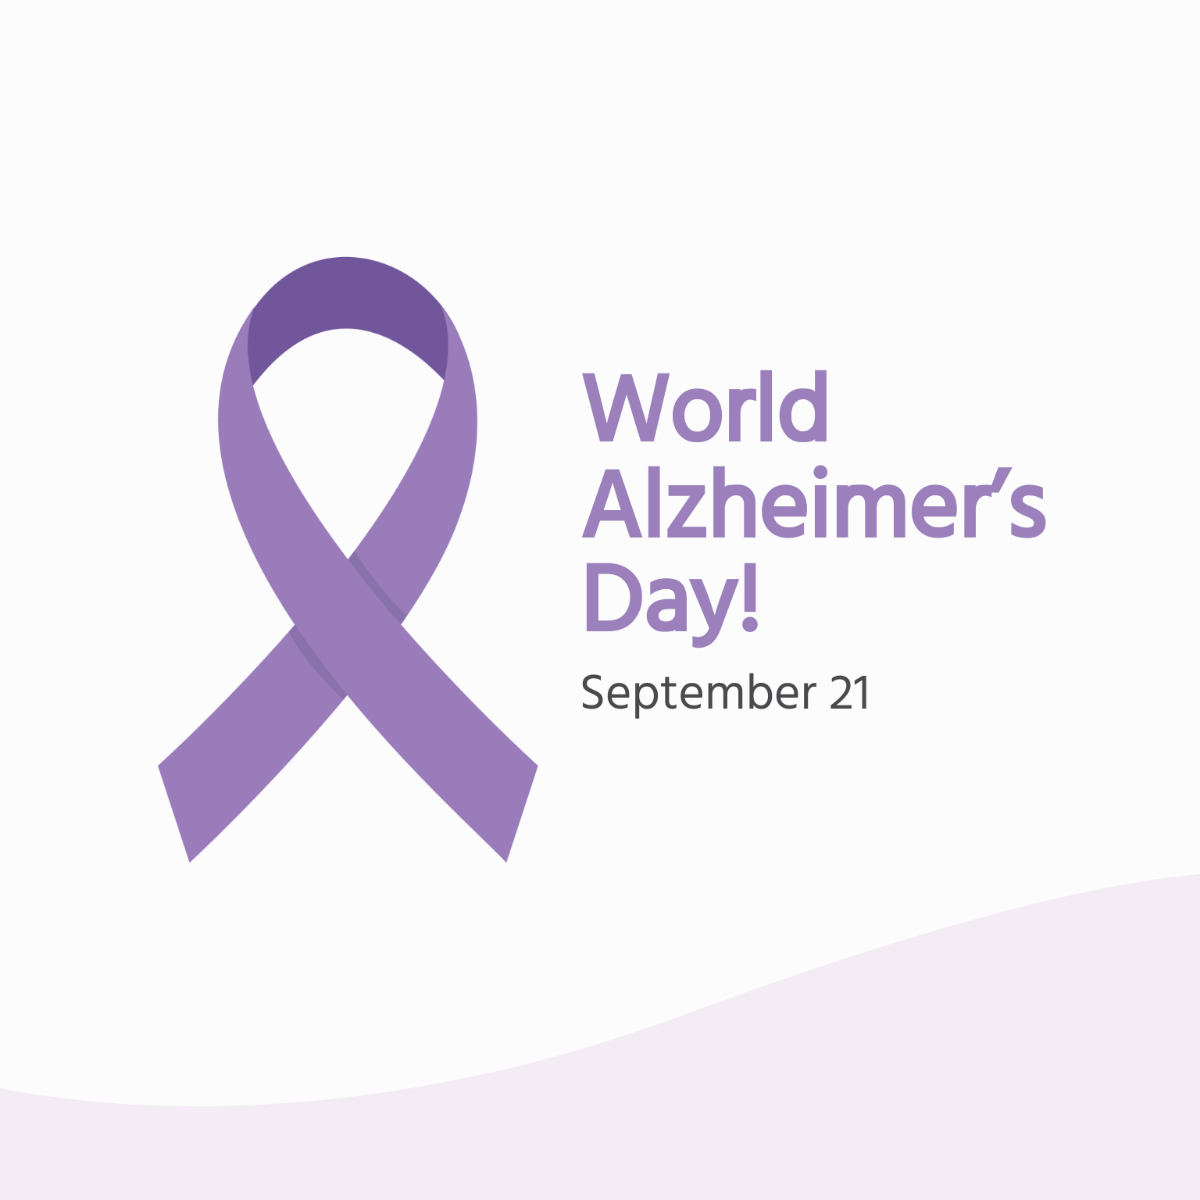 World Alzheimer’s Day Flyer Vector Template